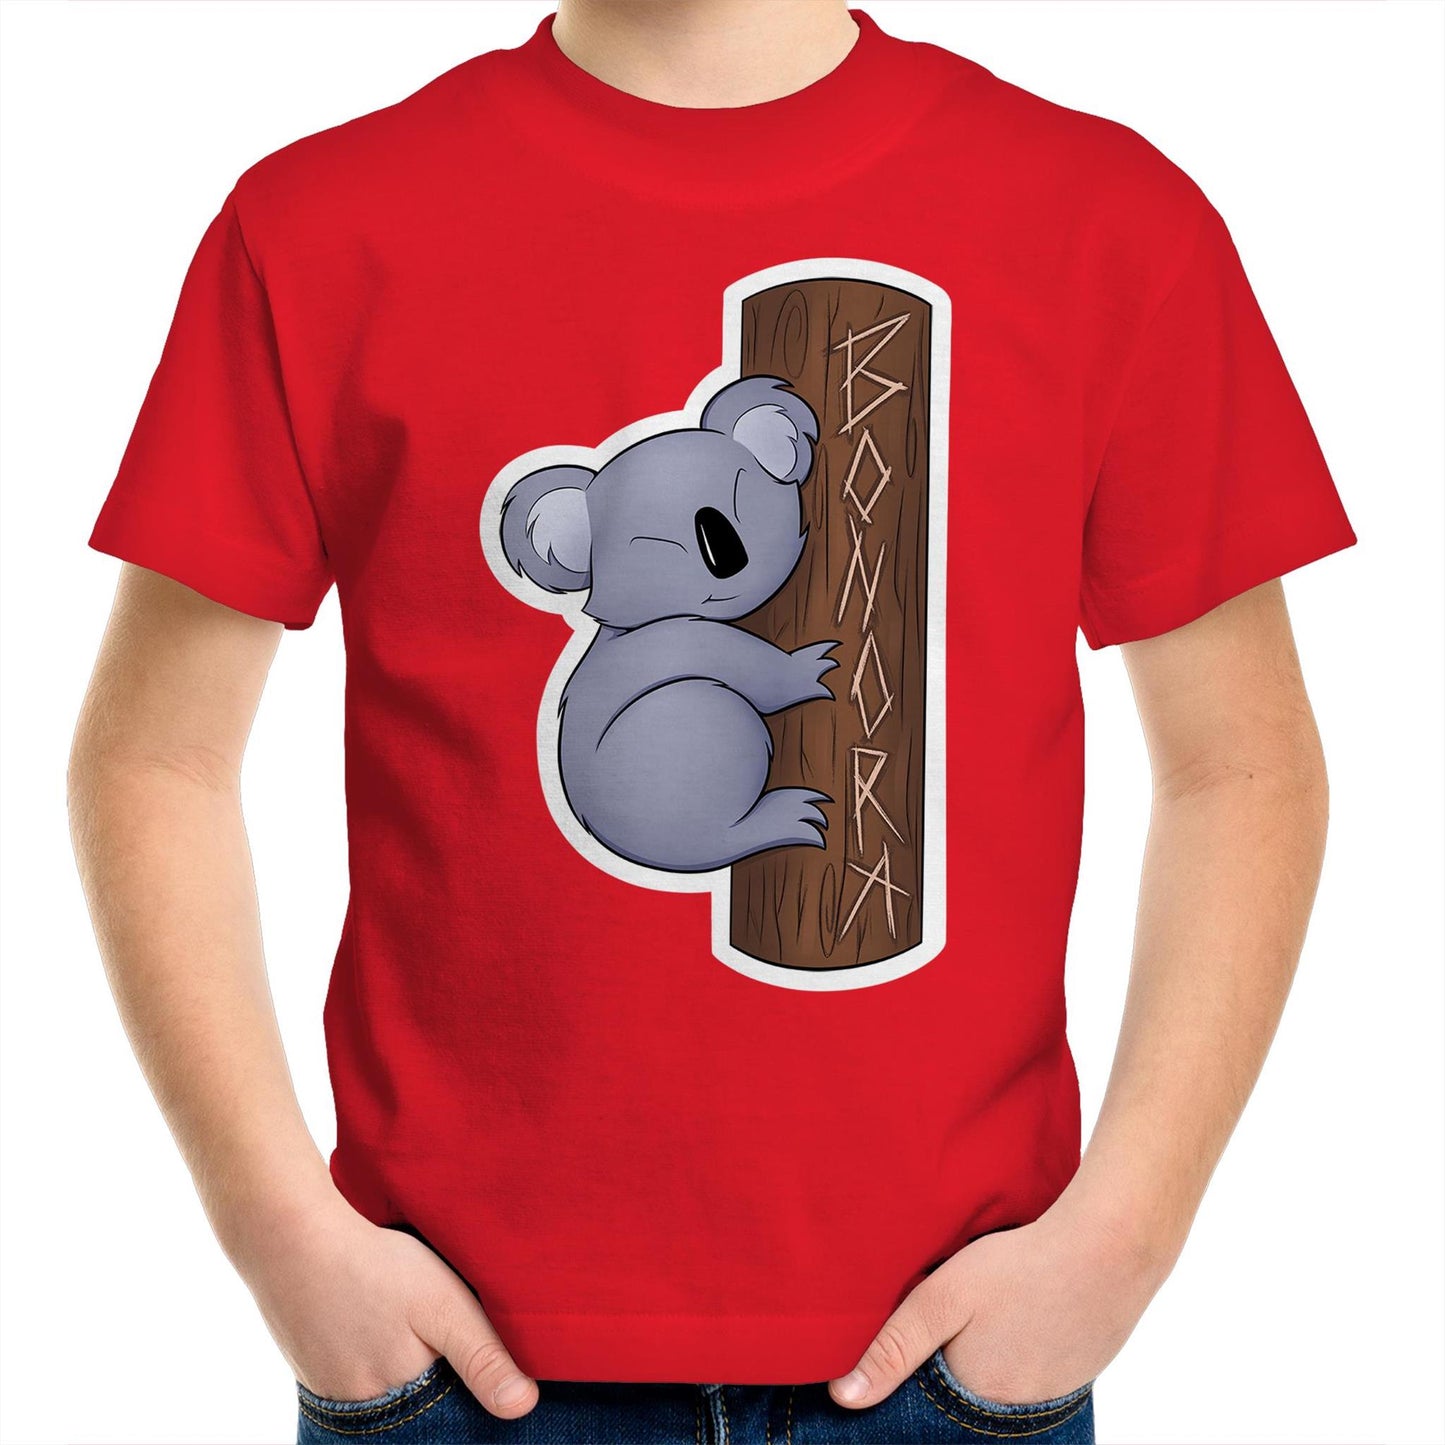 Kai the Koala Kids T-Shirt